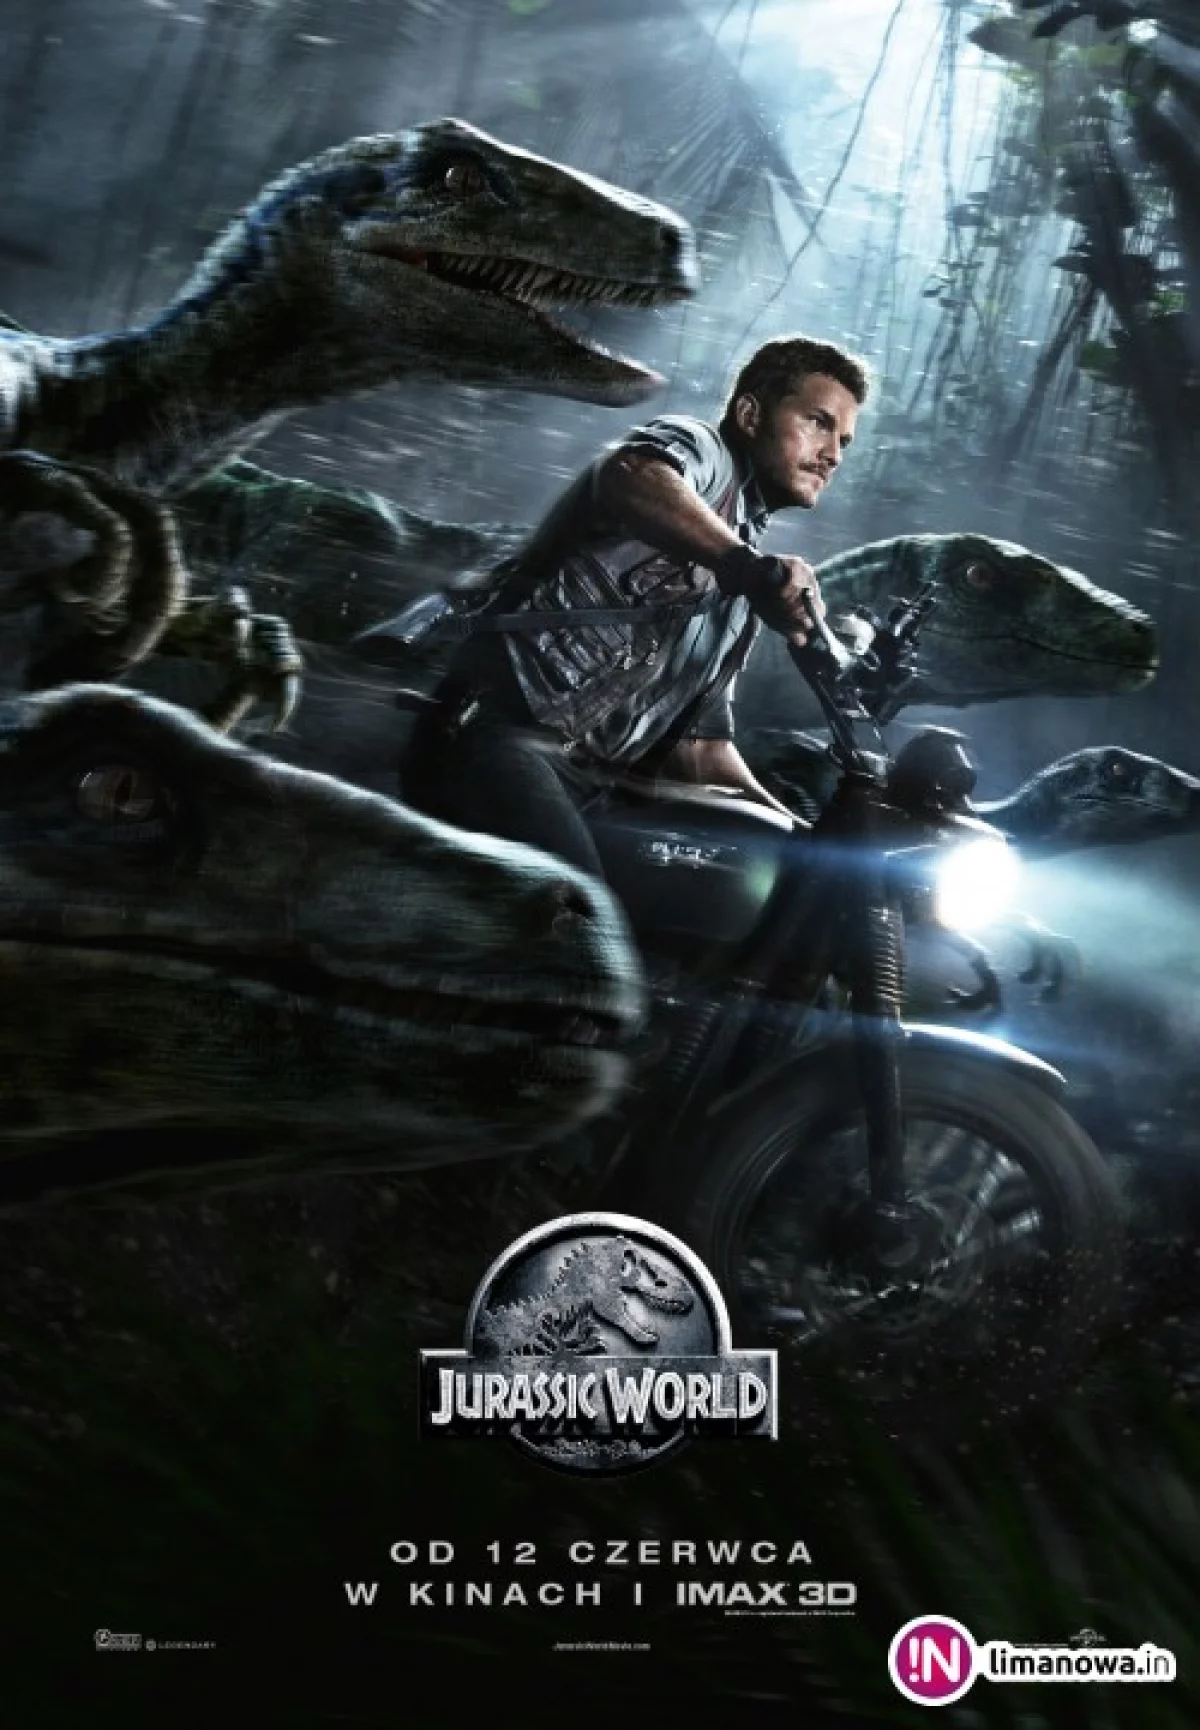 Premiera w kinie Klaps - „Jurassic World” na ekranie od 12 czerwca!